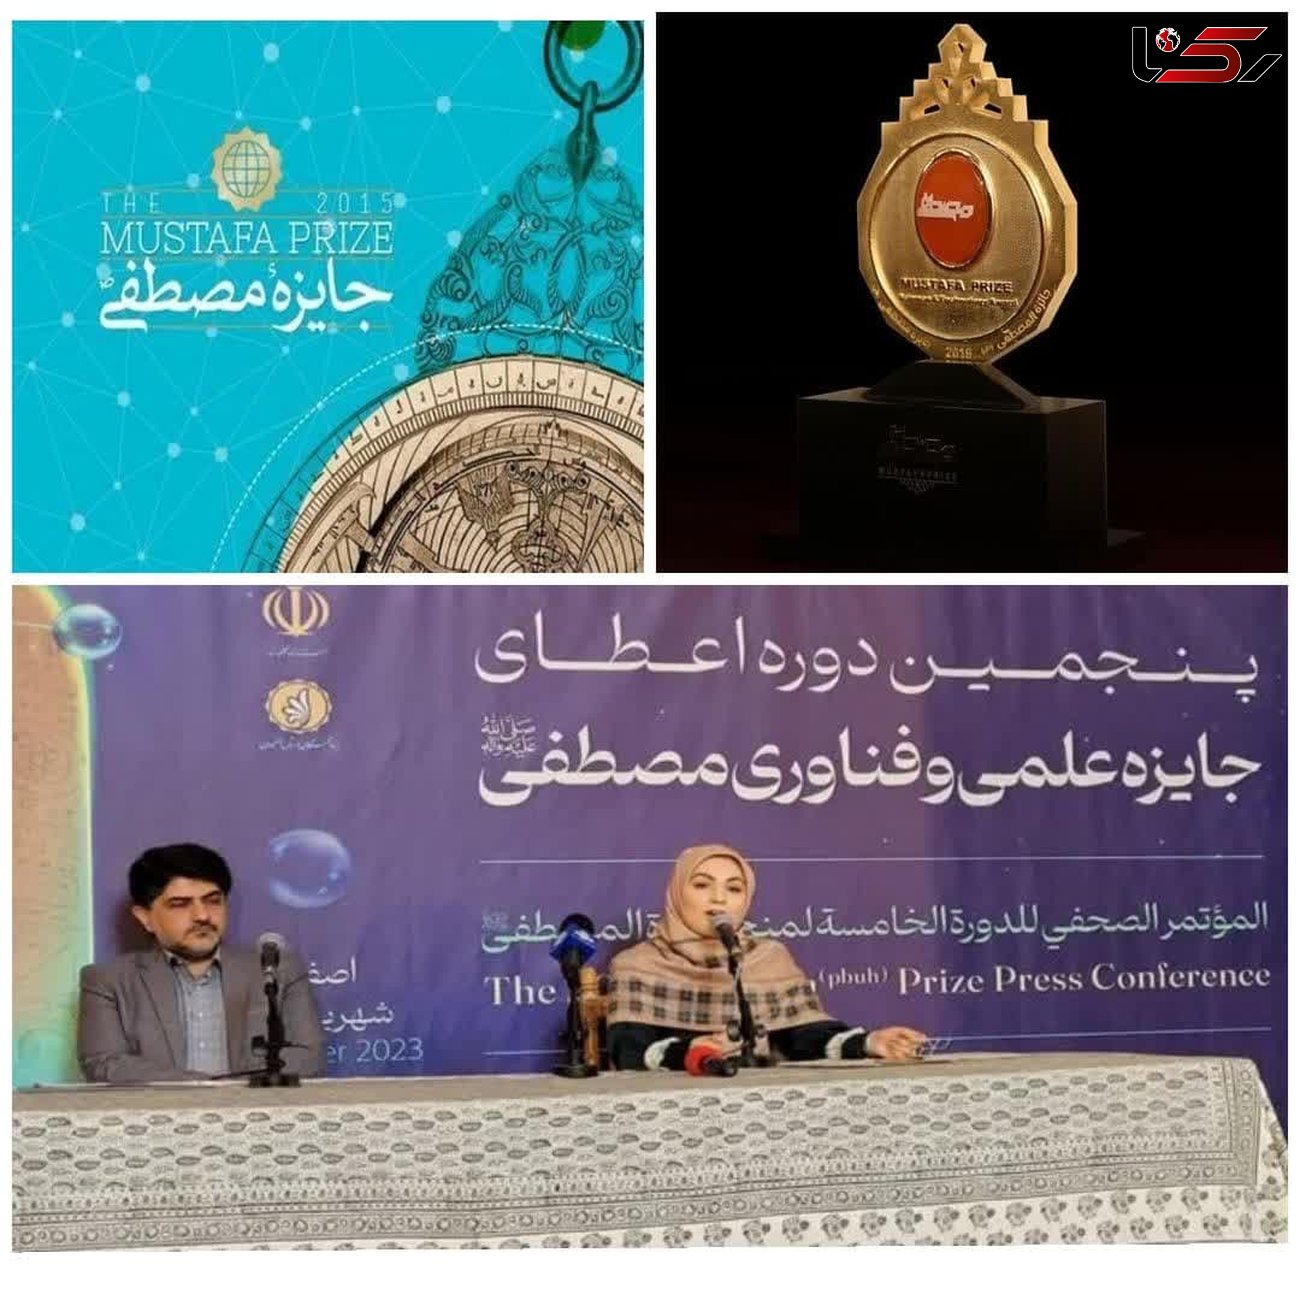 رویداد جایزه مصطفی(ص) در اصفهان برگزار خواهد شد/حضور دانشمندان مسلمان 40کشور در این رویداد